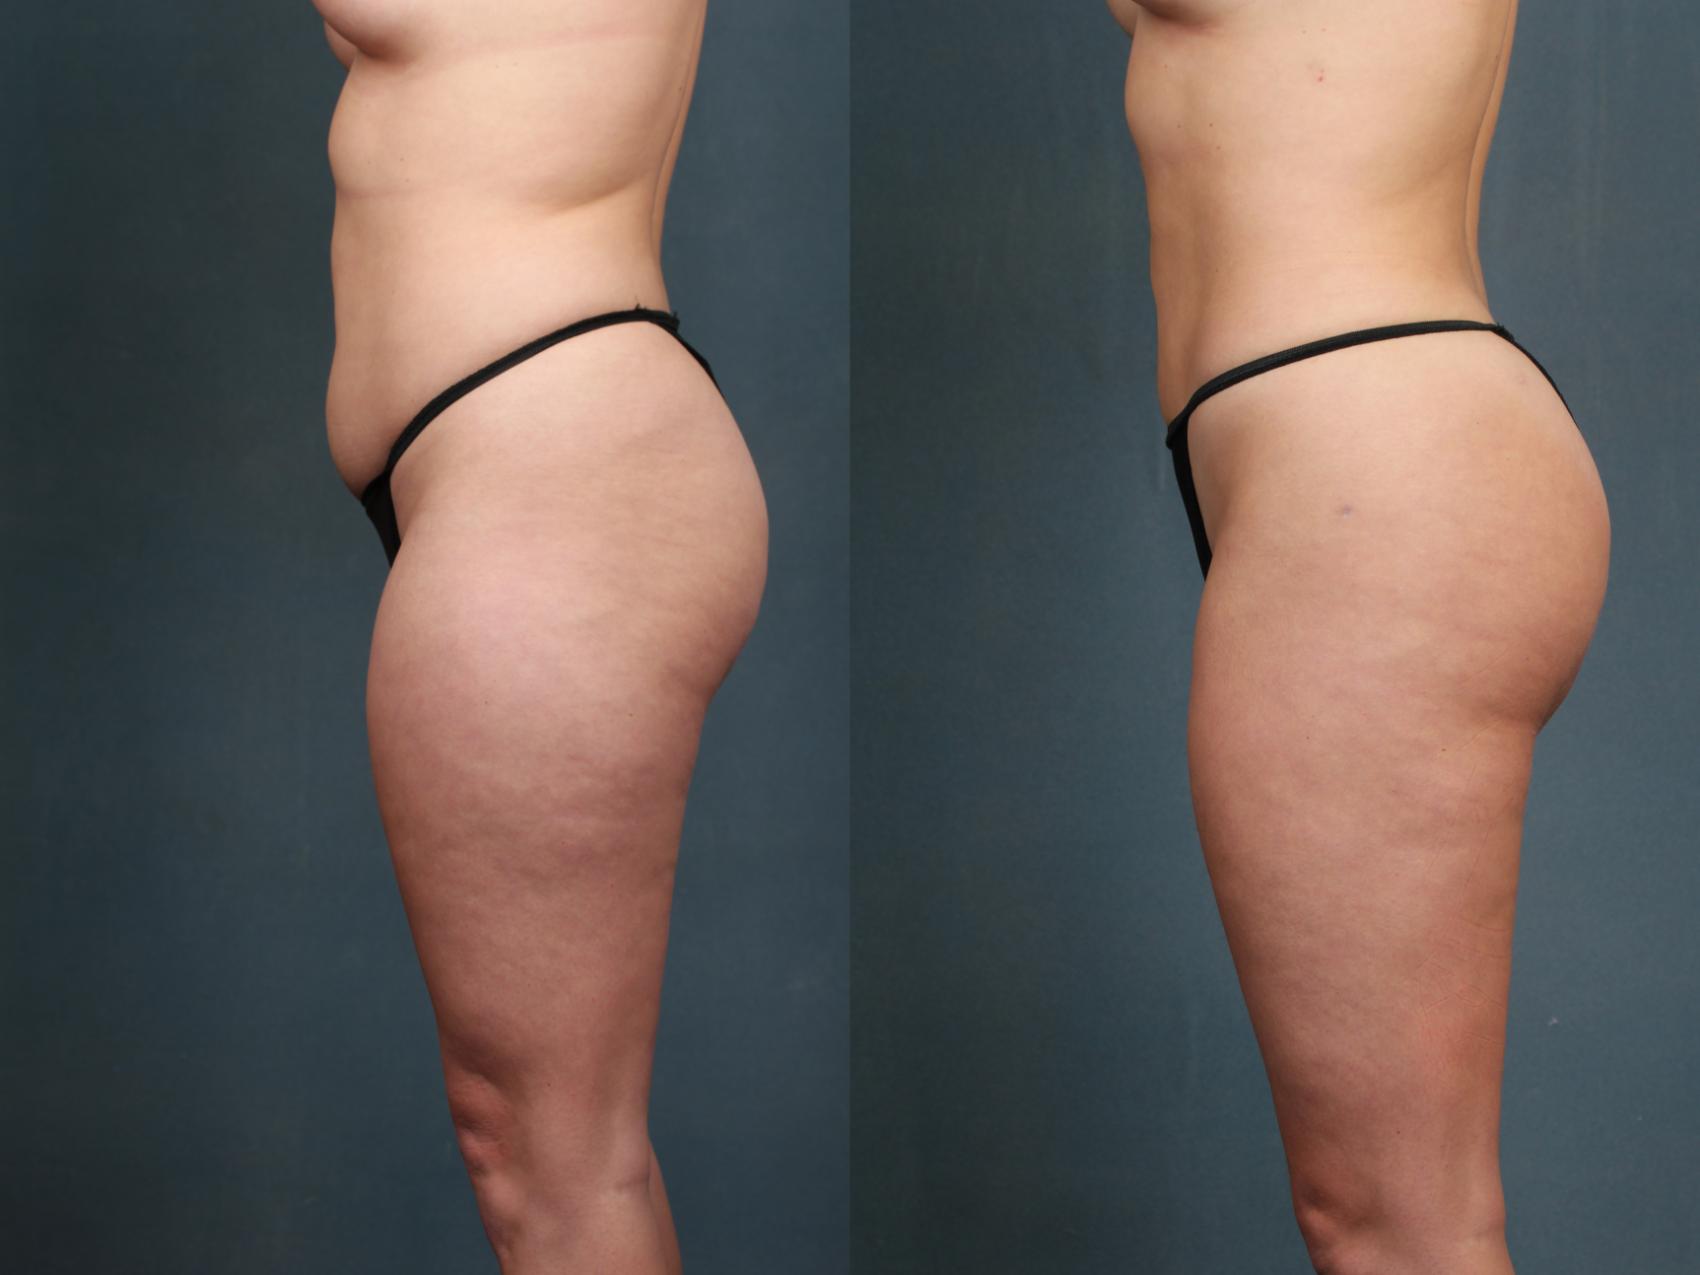 CaloAesthetics Brazilian Butt Lift before and after photo